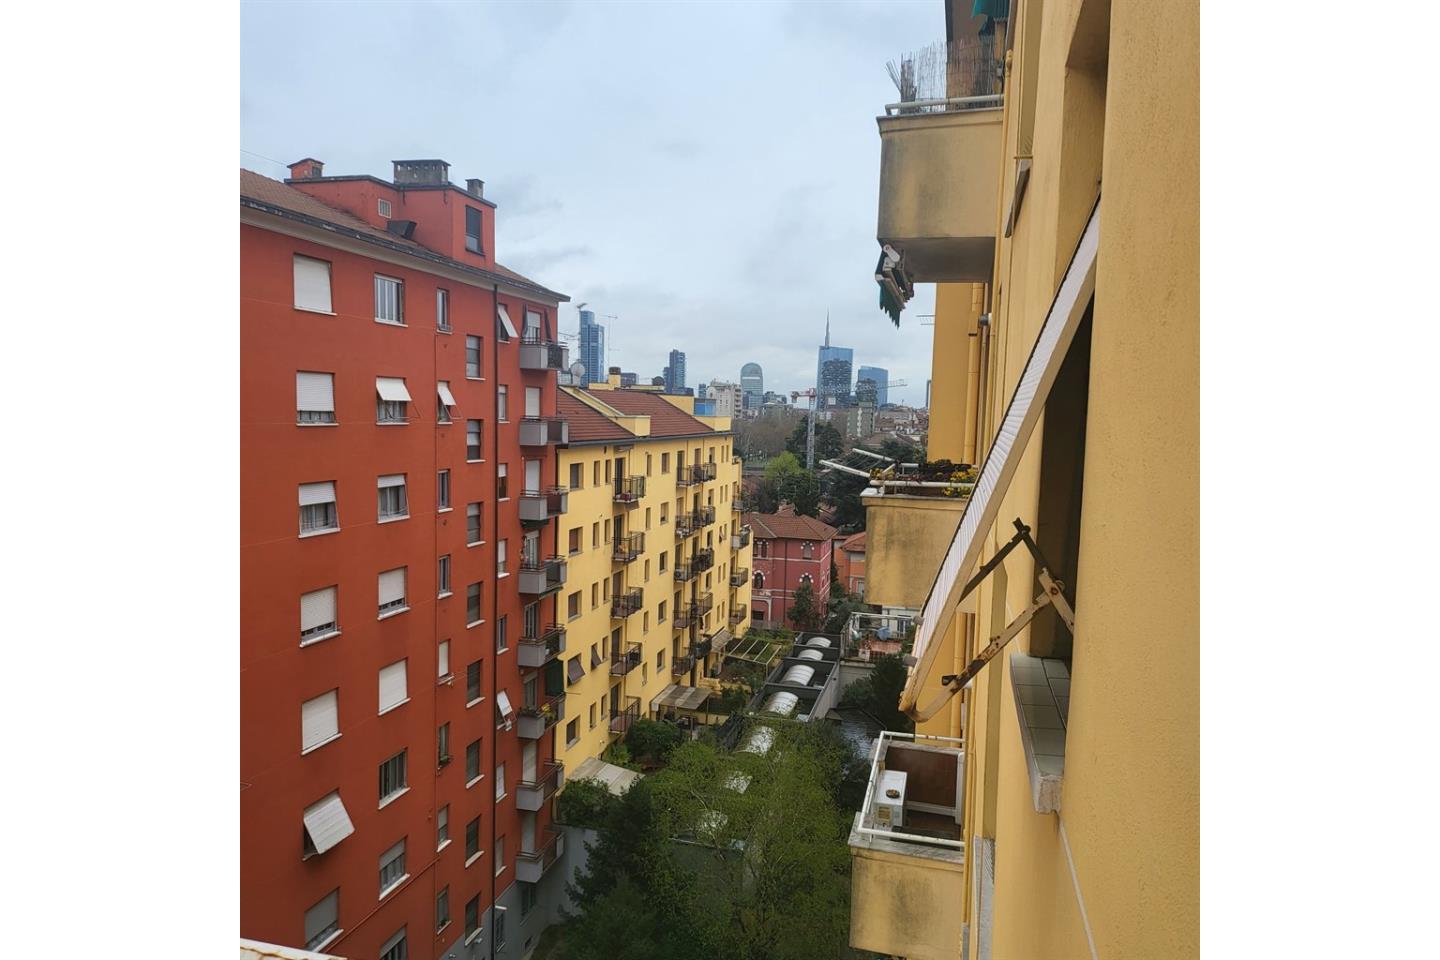 Appartamento in Affitto Milano